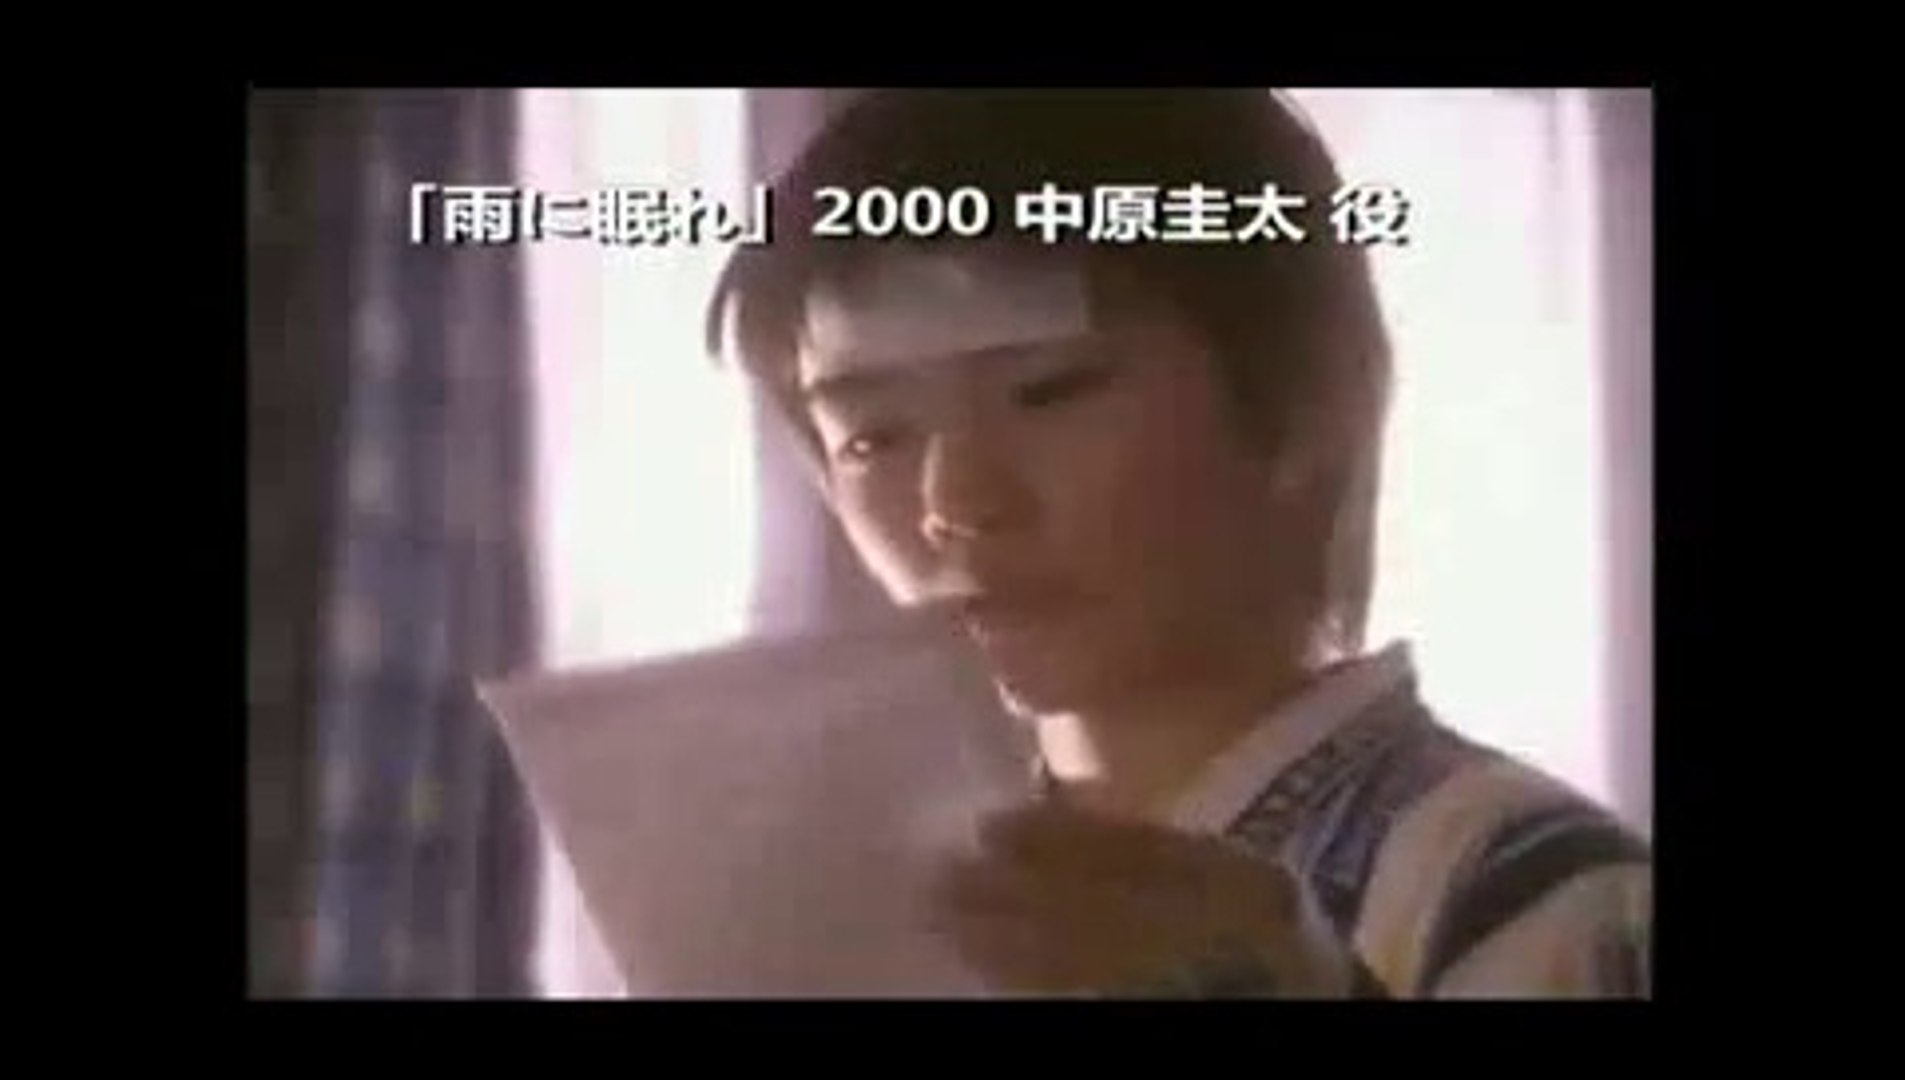 三浦春马1997-2014- Miura Haruma 1997-2014 [VIDEOS]